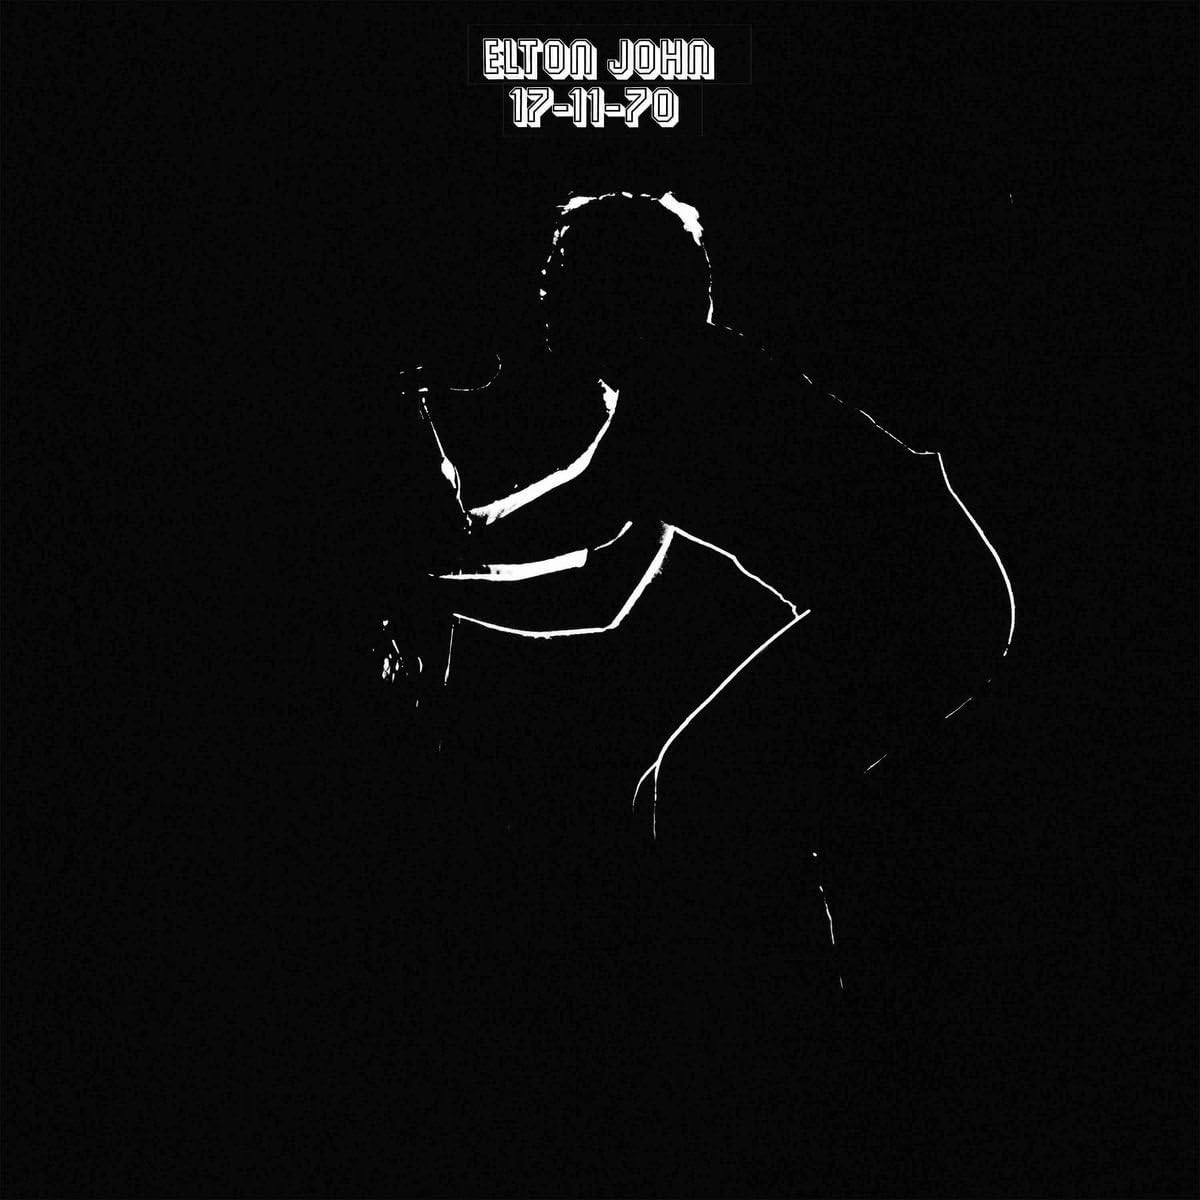 Elton John - 17-11-70: Vinyl LP